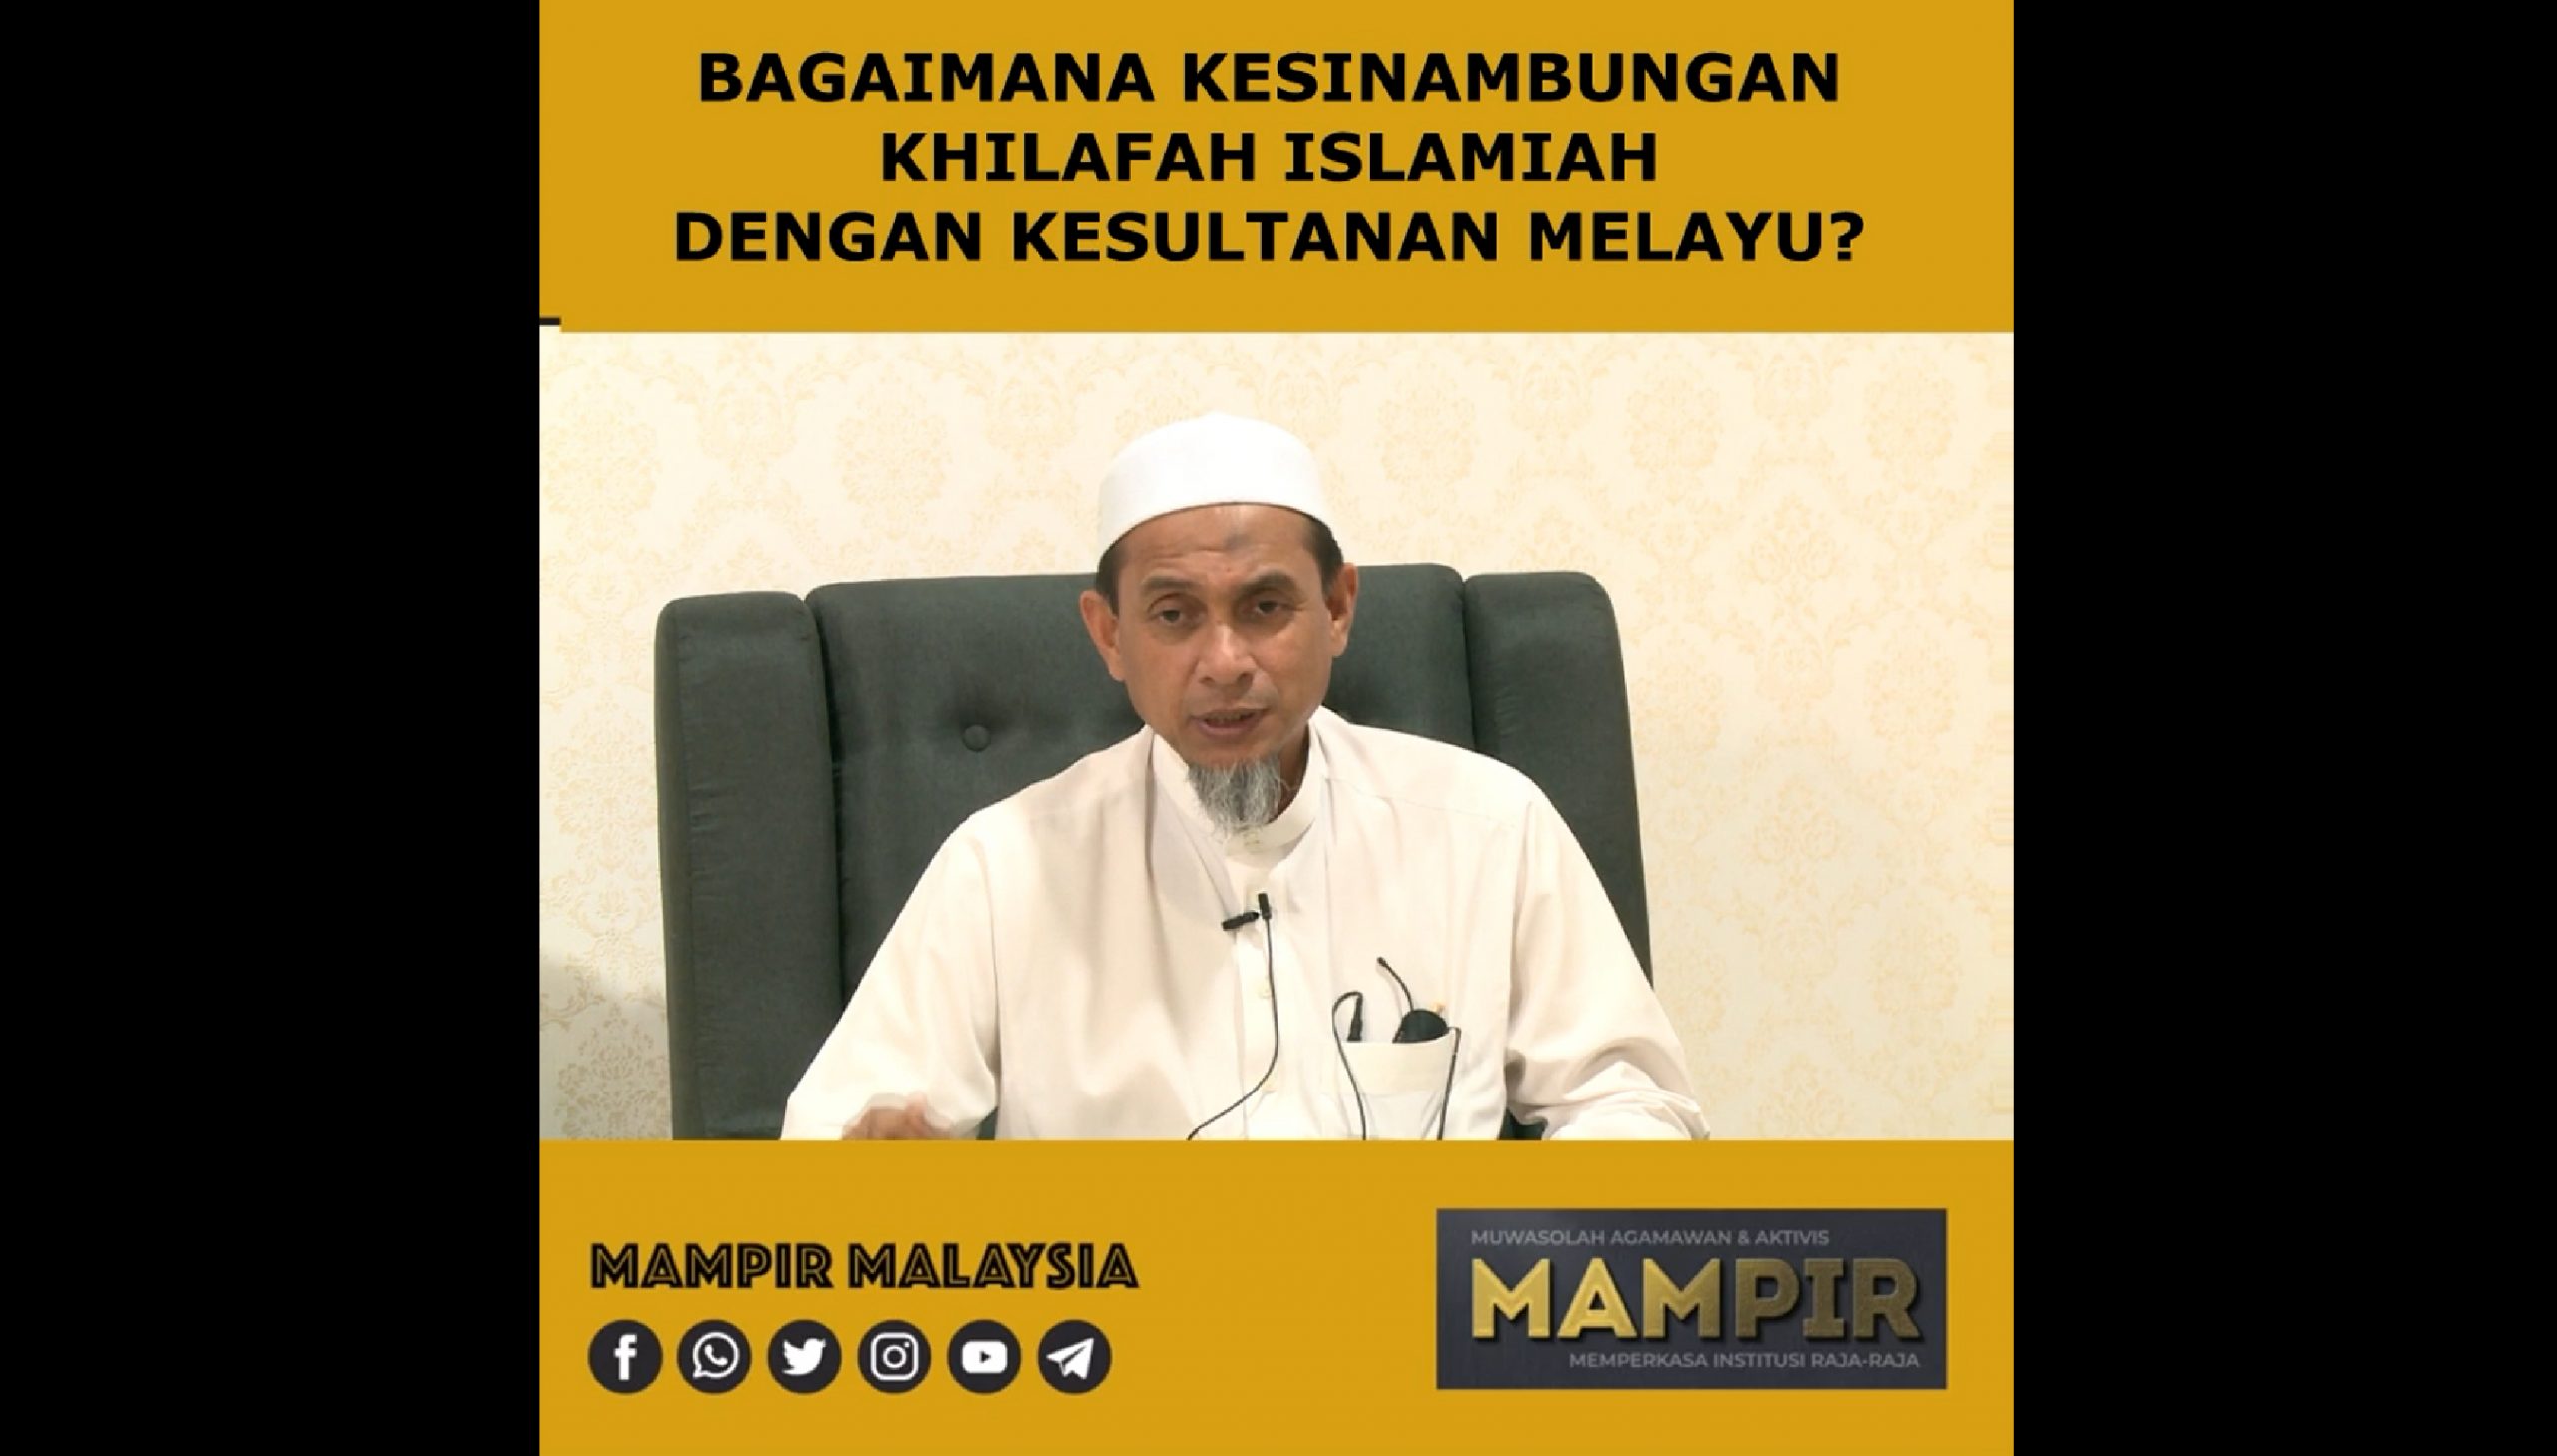 Bagaimana Kesinambungan Khilafah Islamiah Dengan Kesultanan Melayu